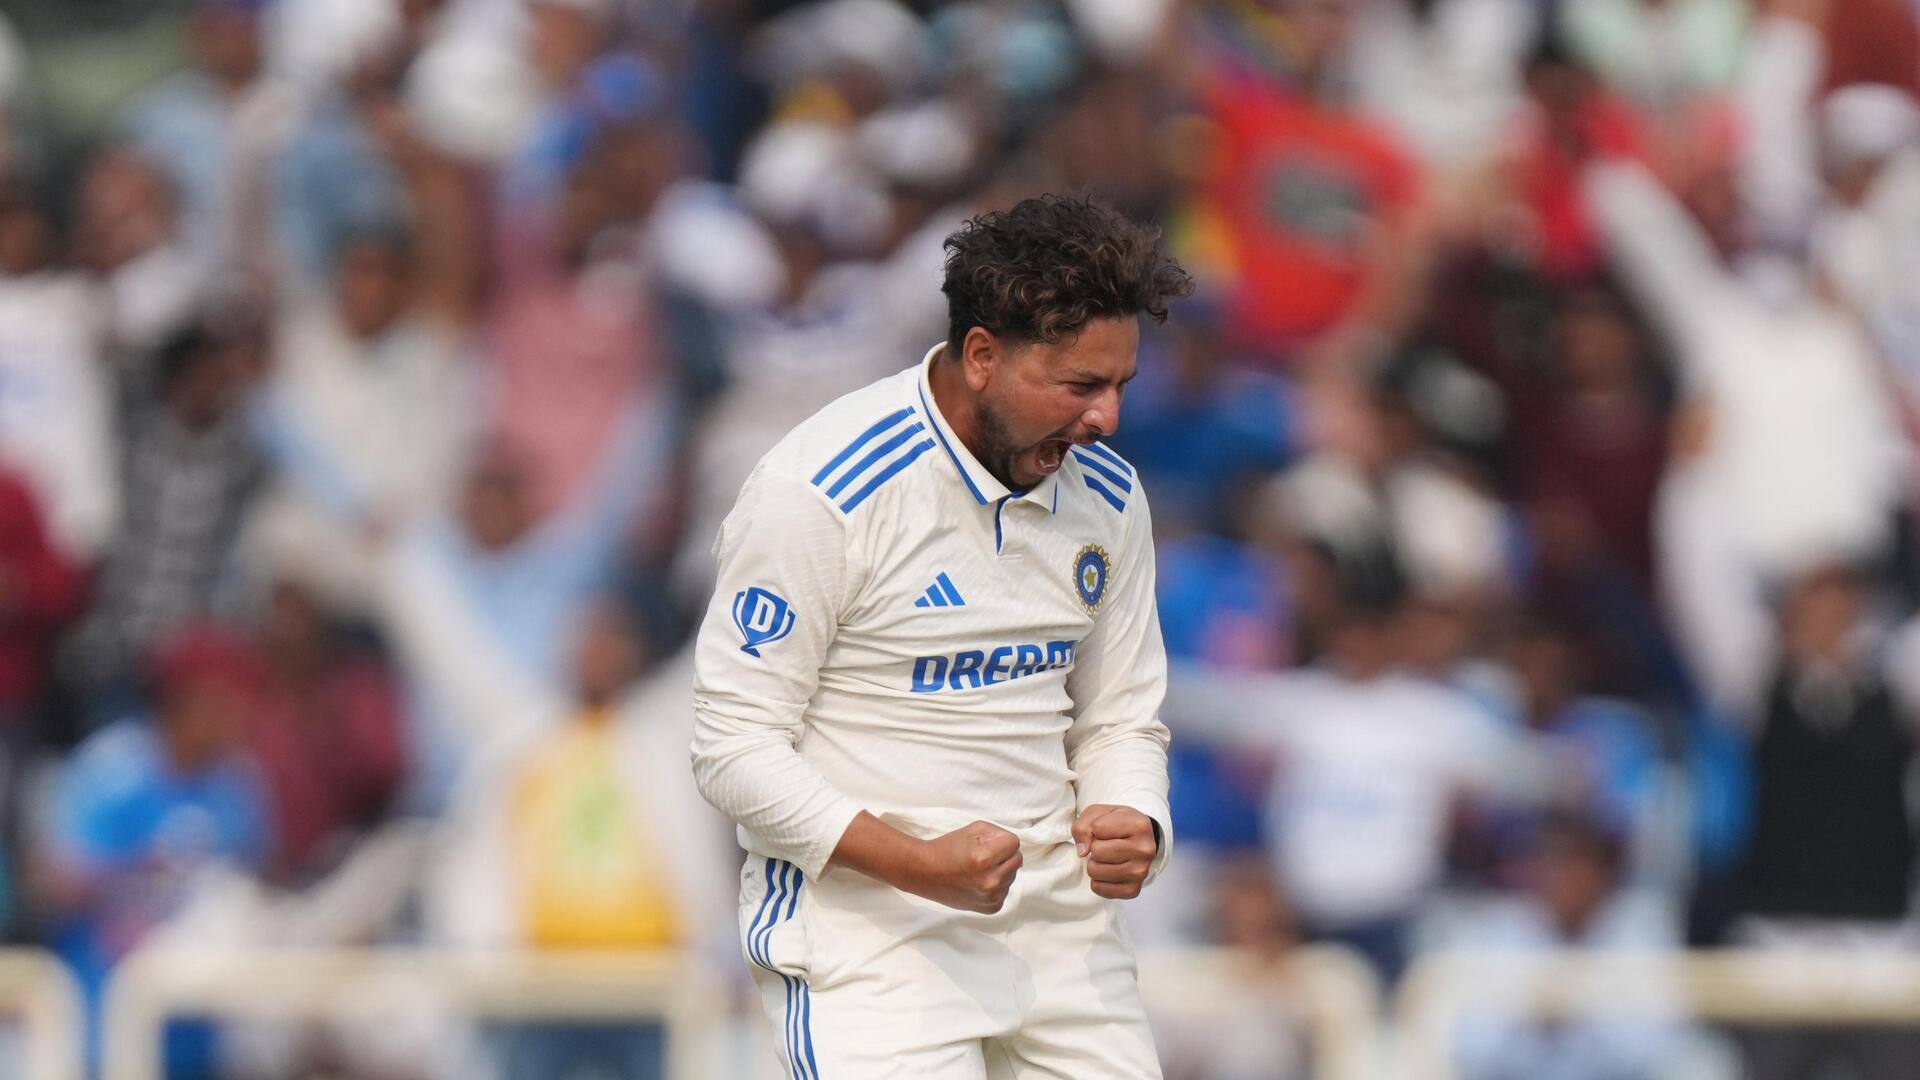 चौथा टेस्ट: कुलदीप यादव ने इंग्लैंड के खिलाफ किया अपना सर्वश्रेष्ठ गेंदबाजी प्रदर्शन, जानिए आंकड़े